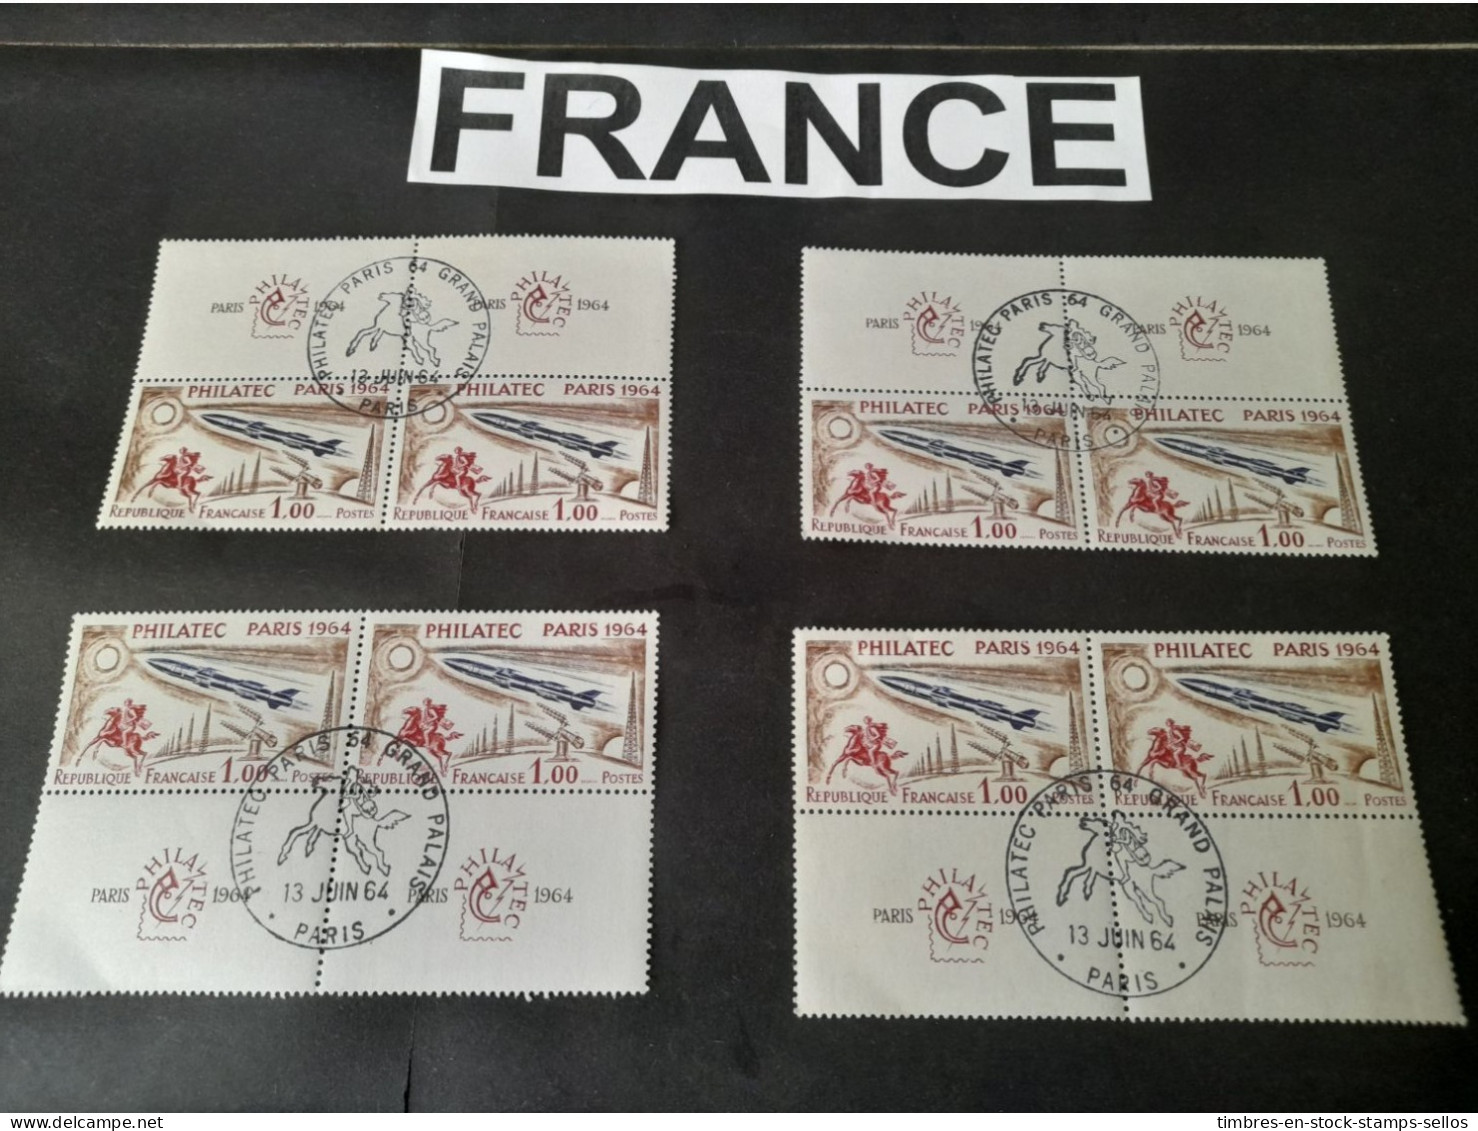 FRANCE   4 X ,PAIRES PHILATEC 1964 OBLITÉRÉS  13.JUIN 1964 1ER JOUR    4 FIRST DAY COVERS 1964  PHILATEC - Lots & Kiloware (mixtures) - Max. 999 Stamps